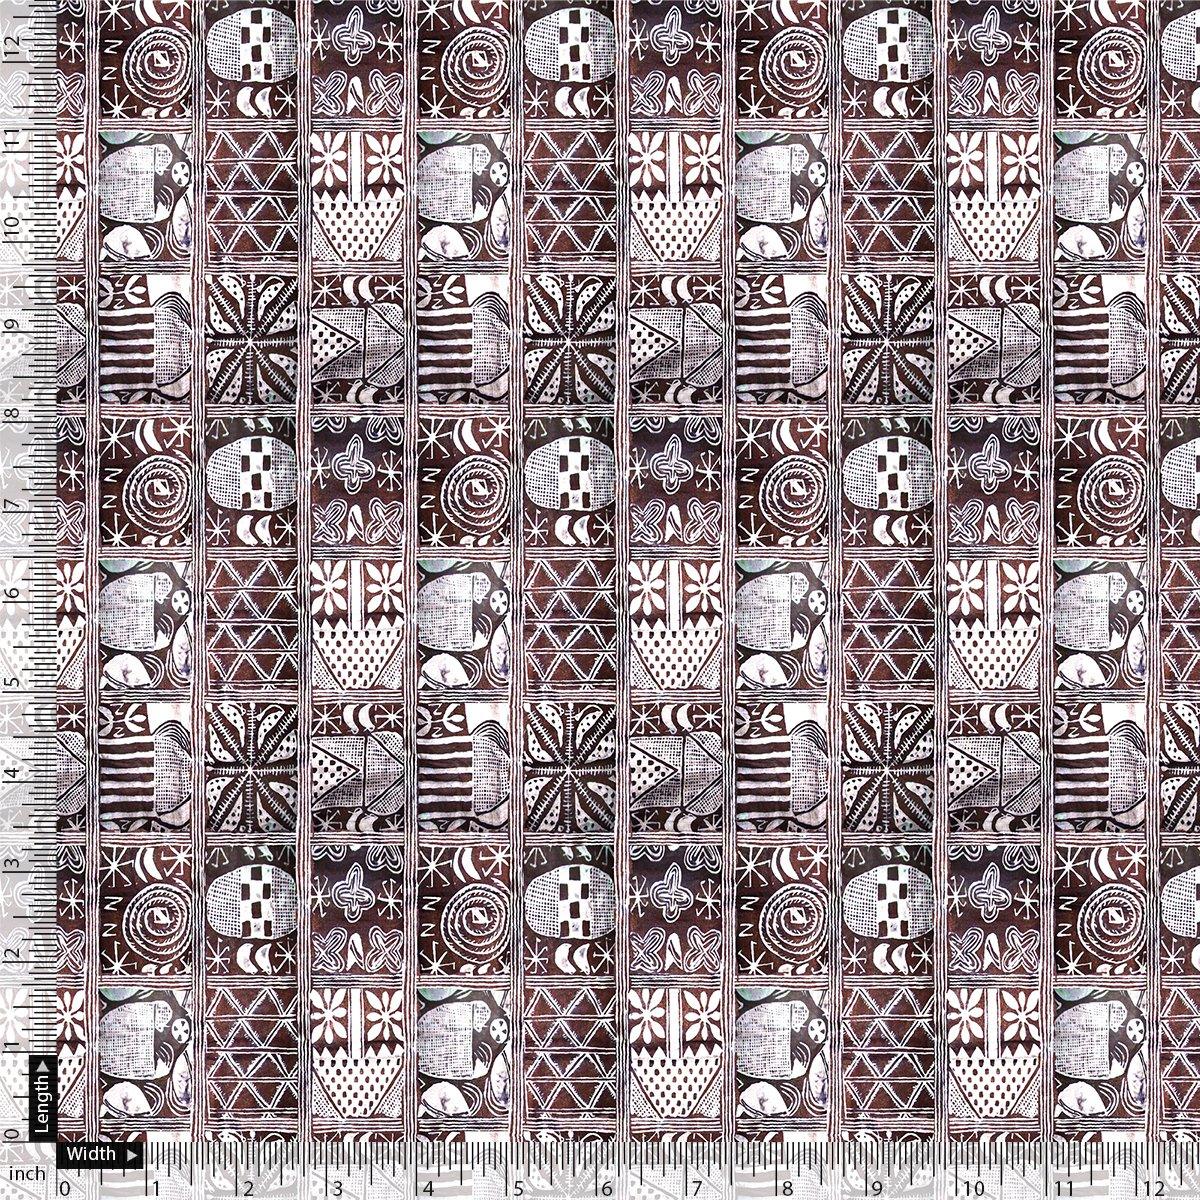 Greek Art Of Multitype Pattern Digital Printed Fabric - Pure Georgette - FAB VOGUE Studio®